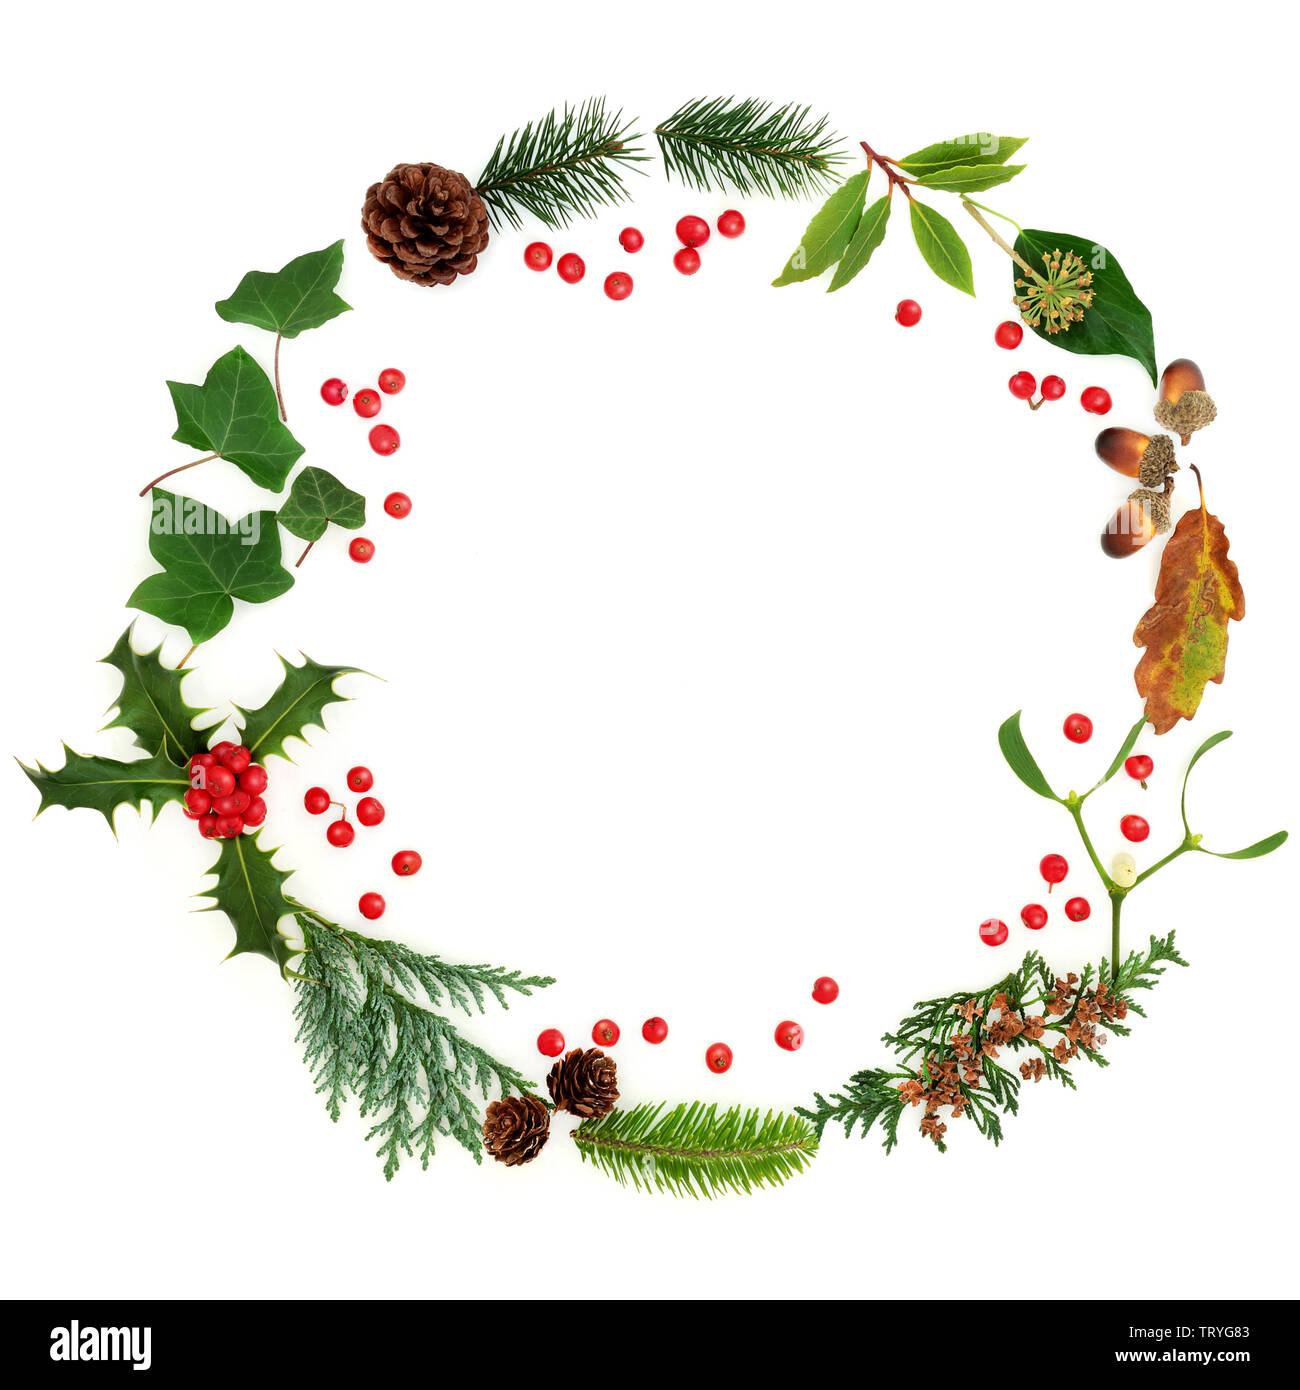 Winter flora Kranz mit traditionellen Winter grün und rot Stechpalme Beeren auf weißem Hintergrund mit kopieren. Symbol für die festliche Weihnachten Saison. Stockfoto